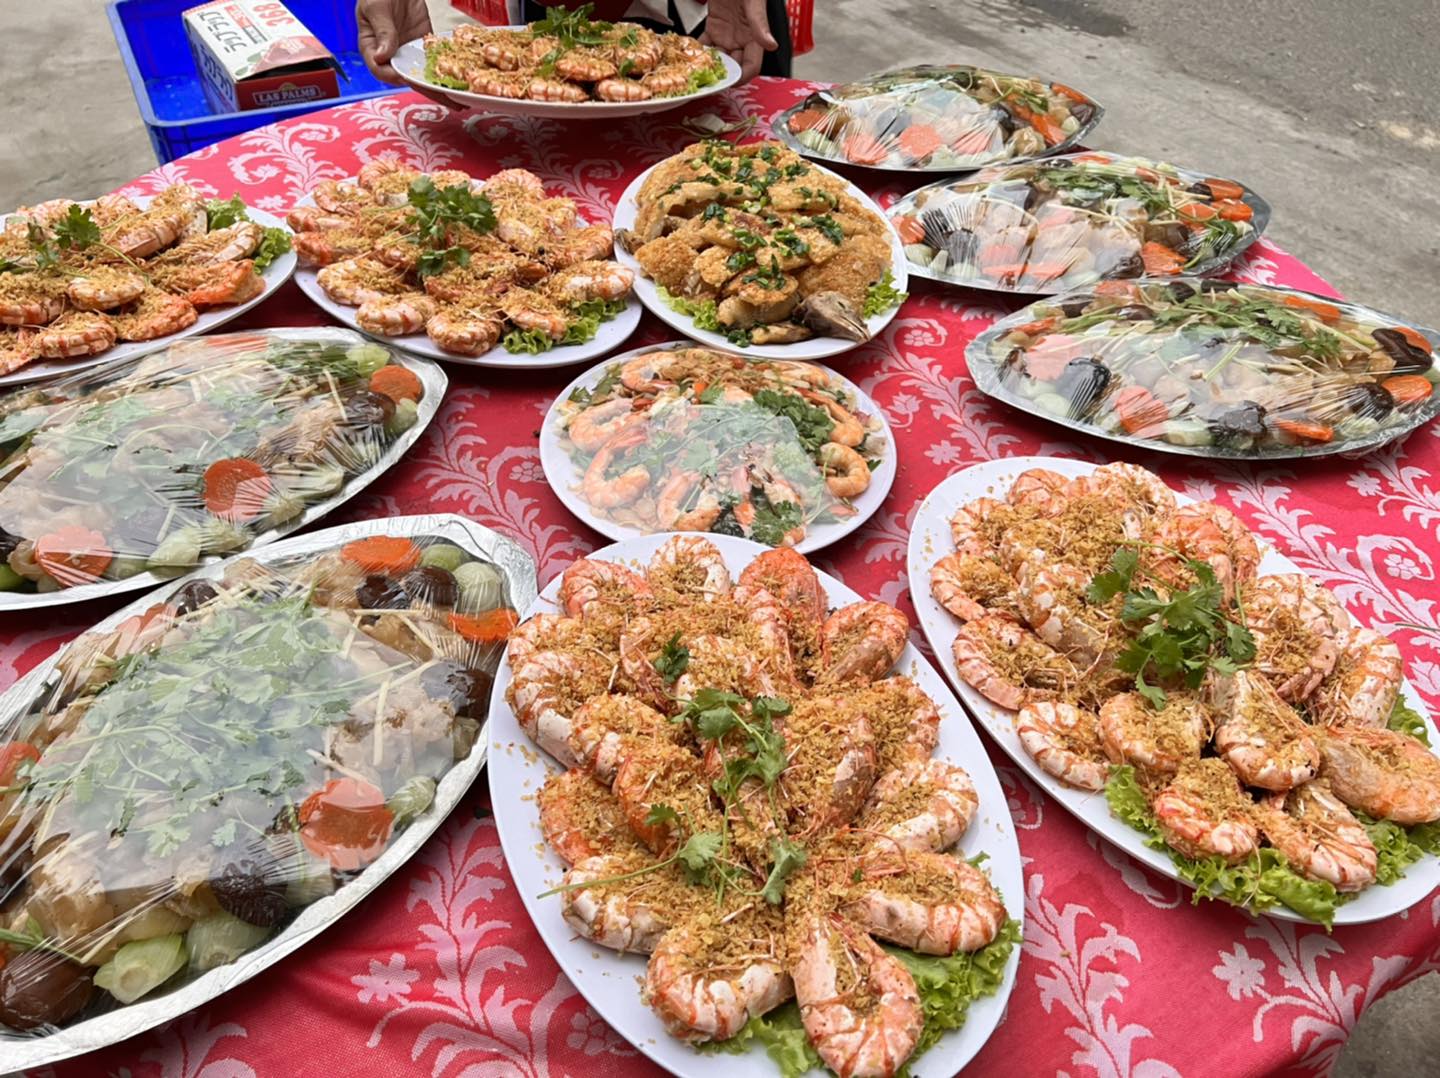 Nấu tiệc Kim Anh - Dịch vụ nấu ăn tiệc cưới chuyên nghiệp, tận tâm